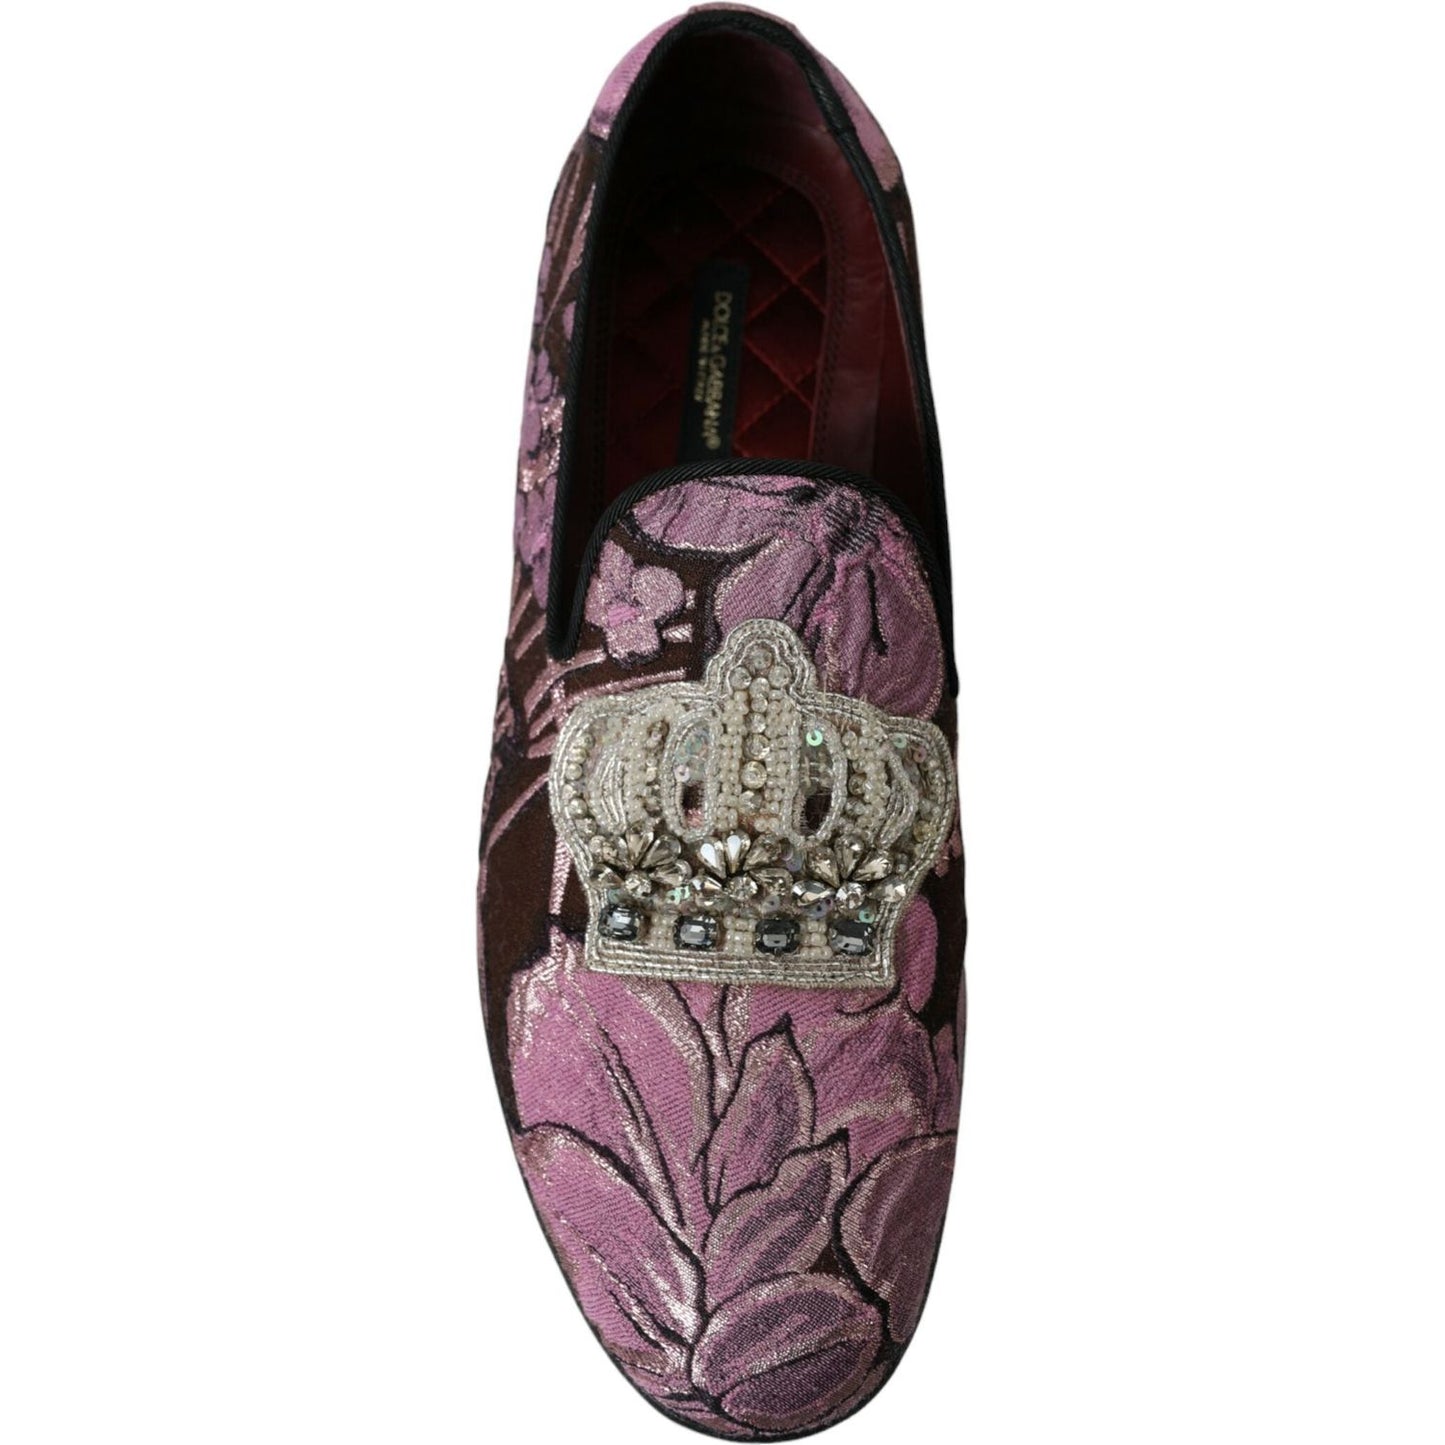 Dolce & Gabbana Elegant Pink Crystal-Embellished Loafers pink-printed-crystal-embellished-loafers-dress-shoes